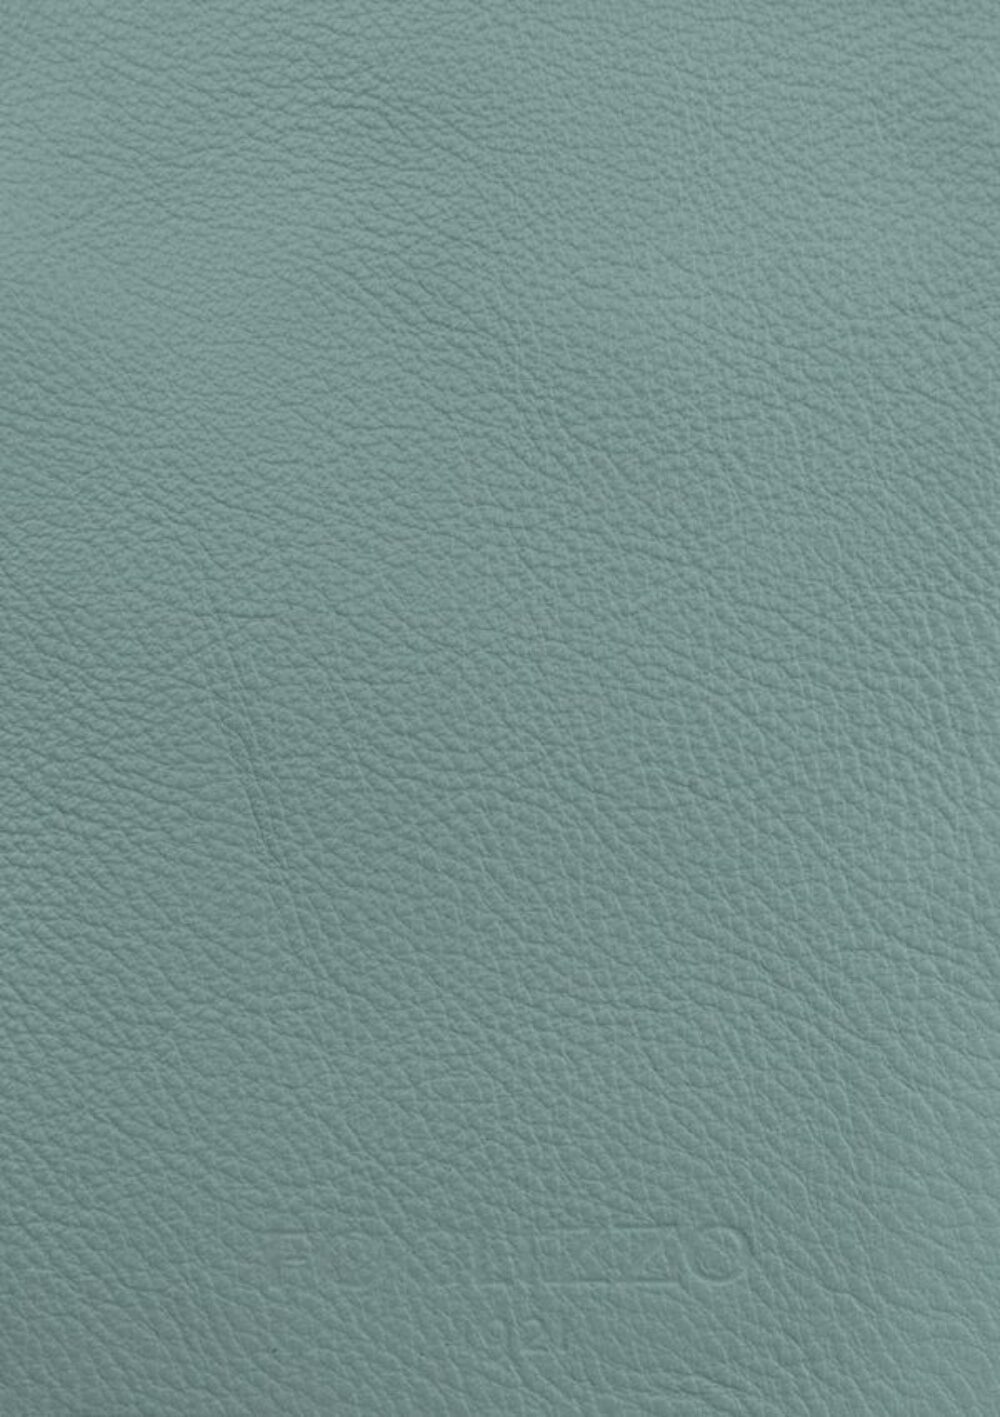 Diseño de lujo y alfombras de alta gama hechas a medida • Lake Water Green Jade